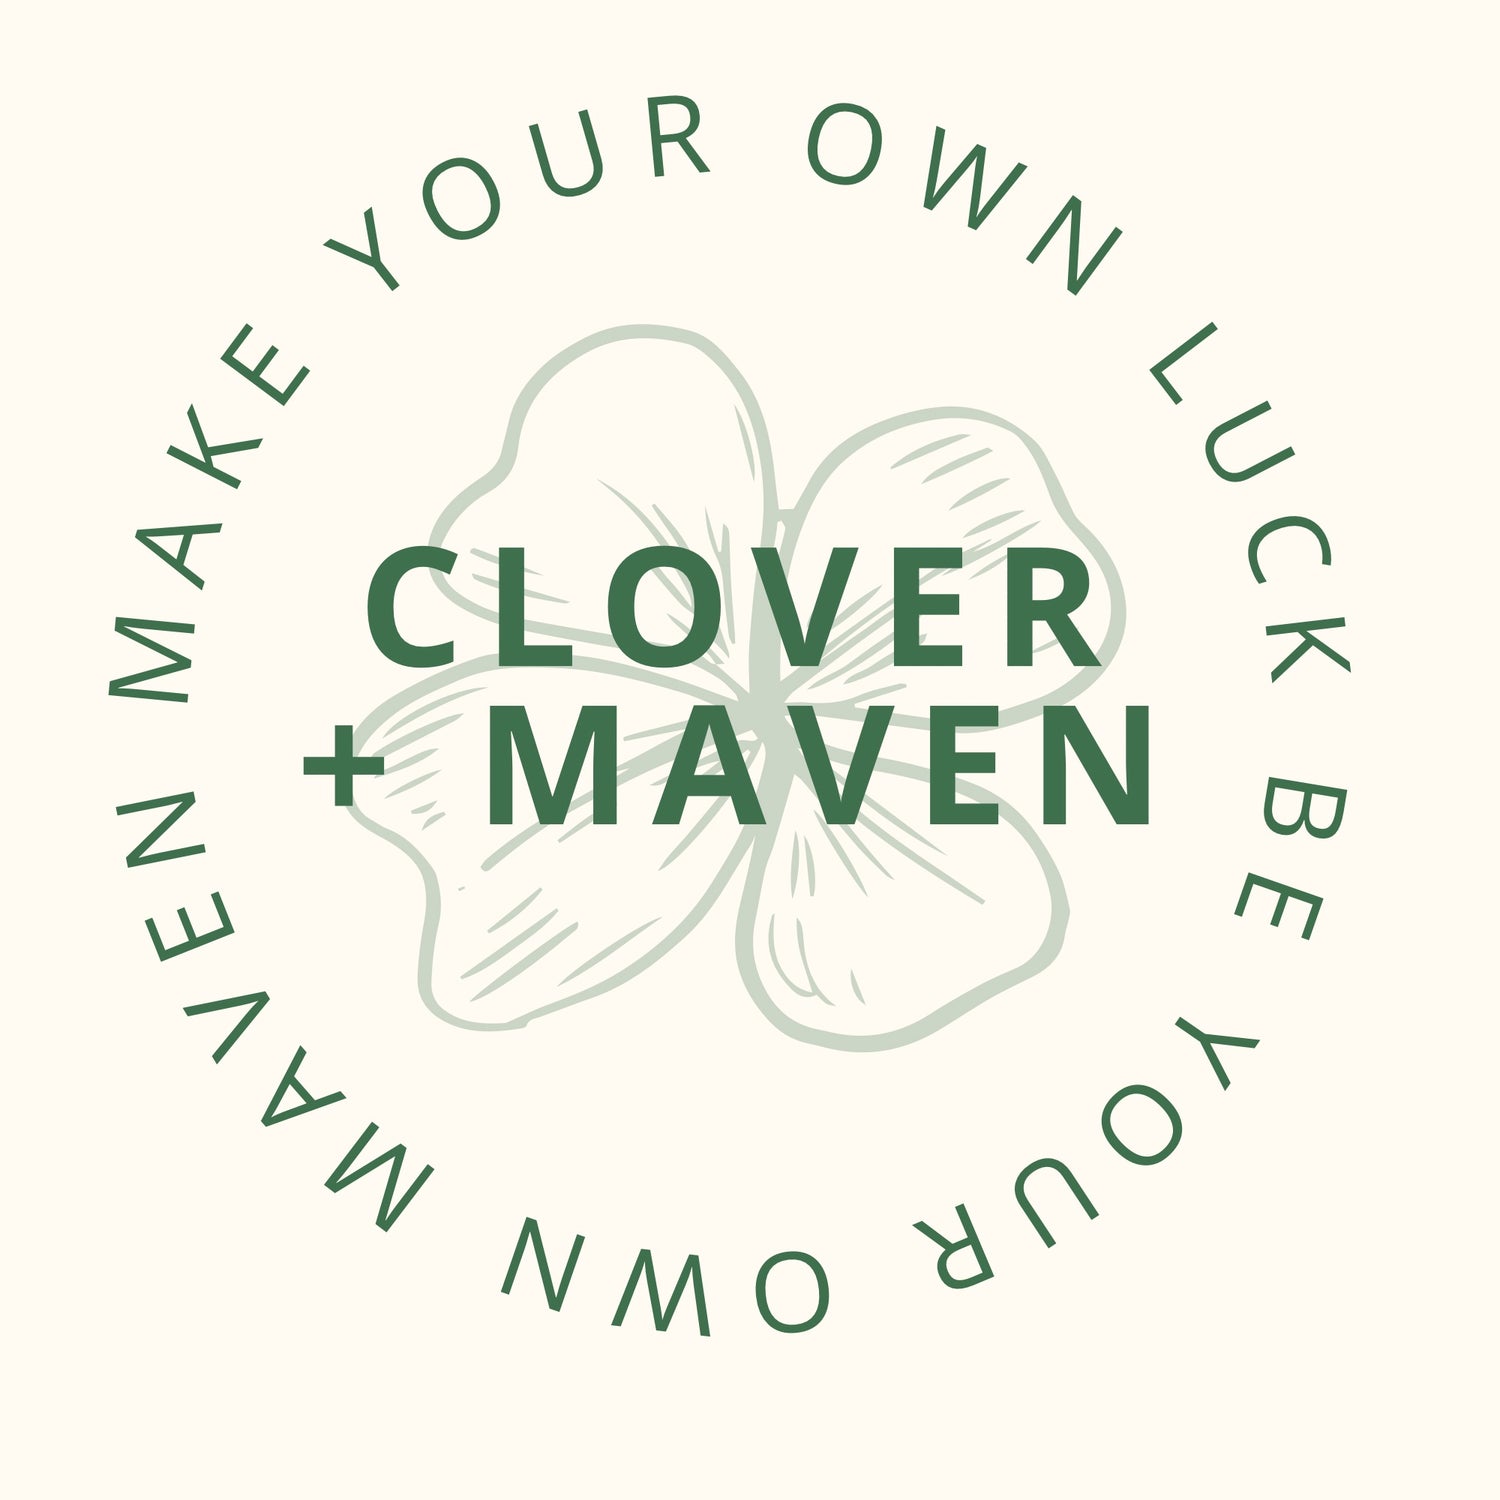 Clover + Maven